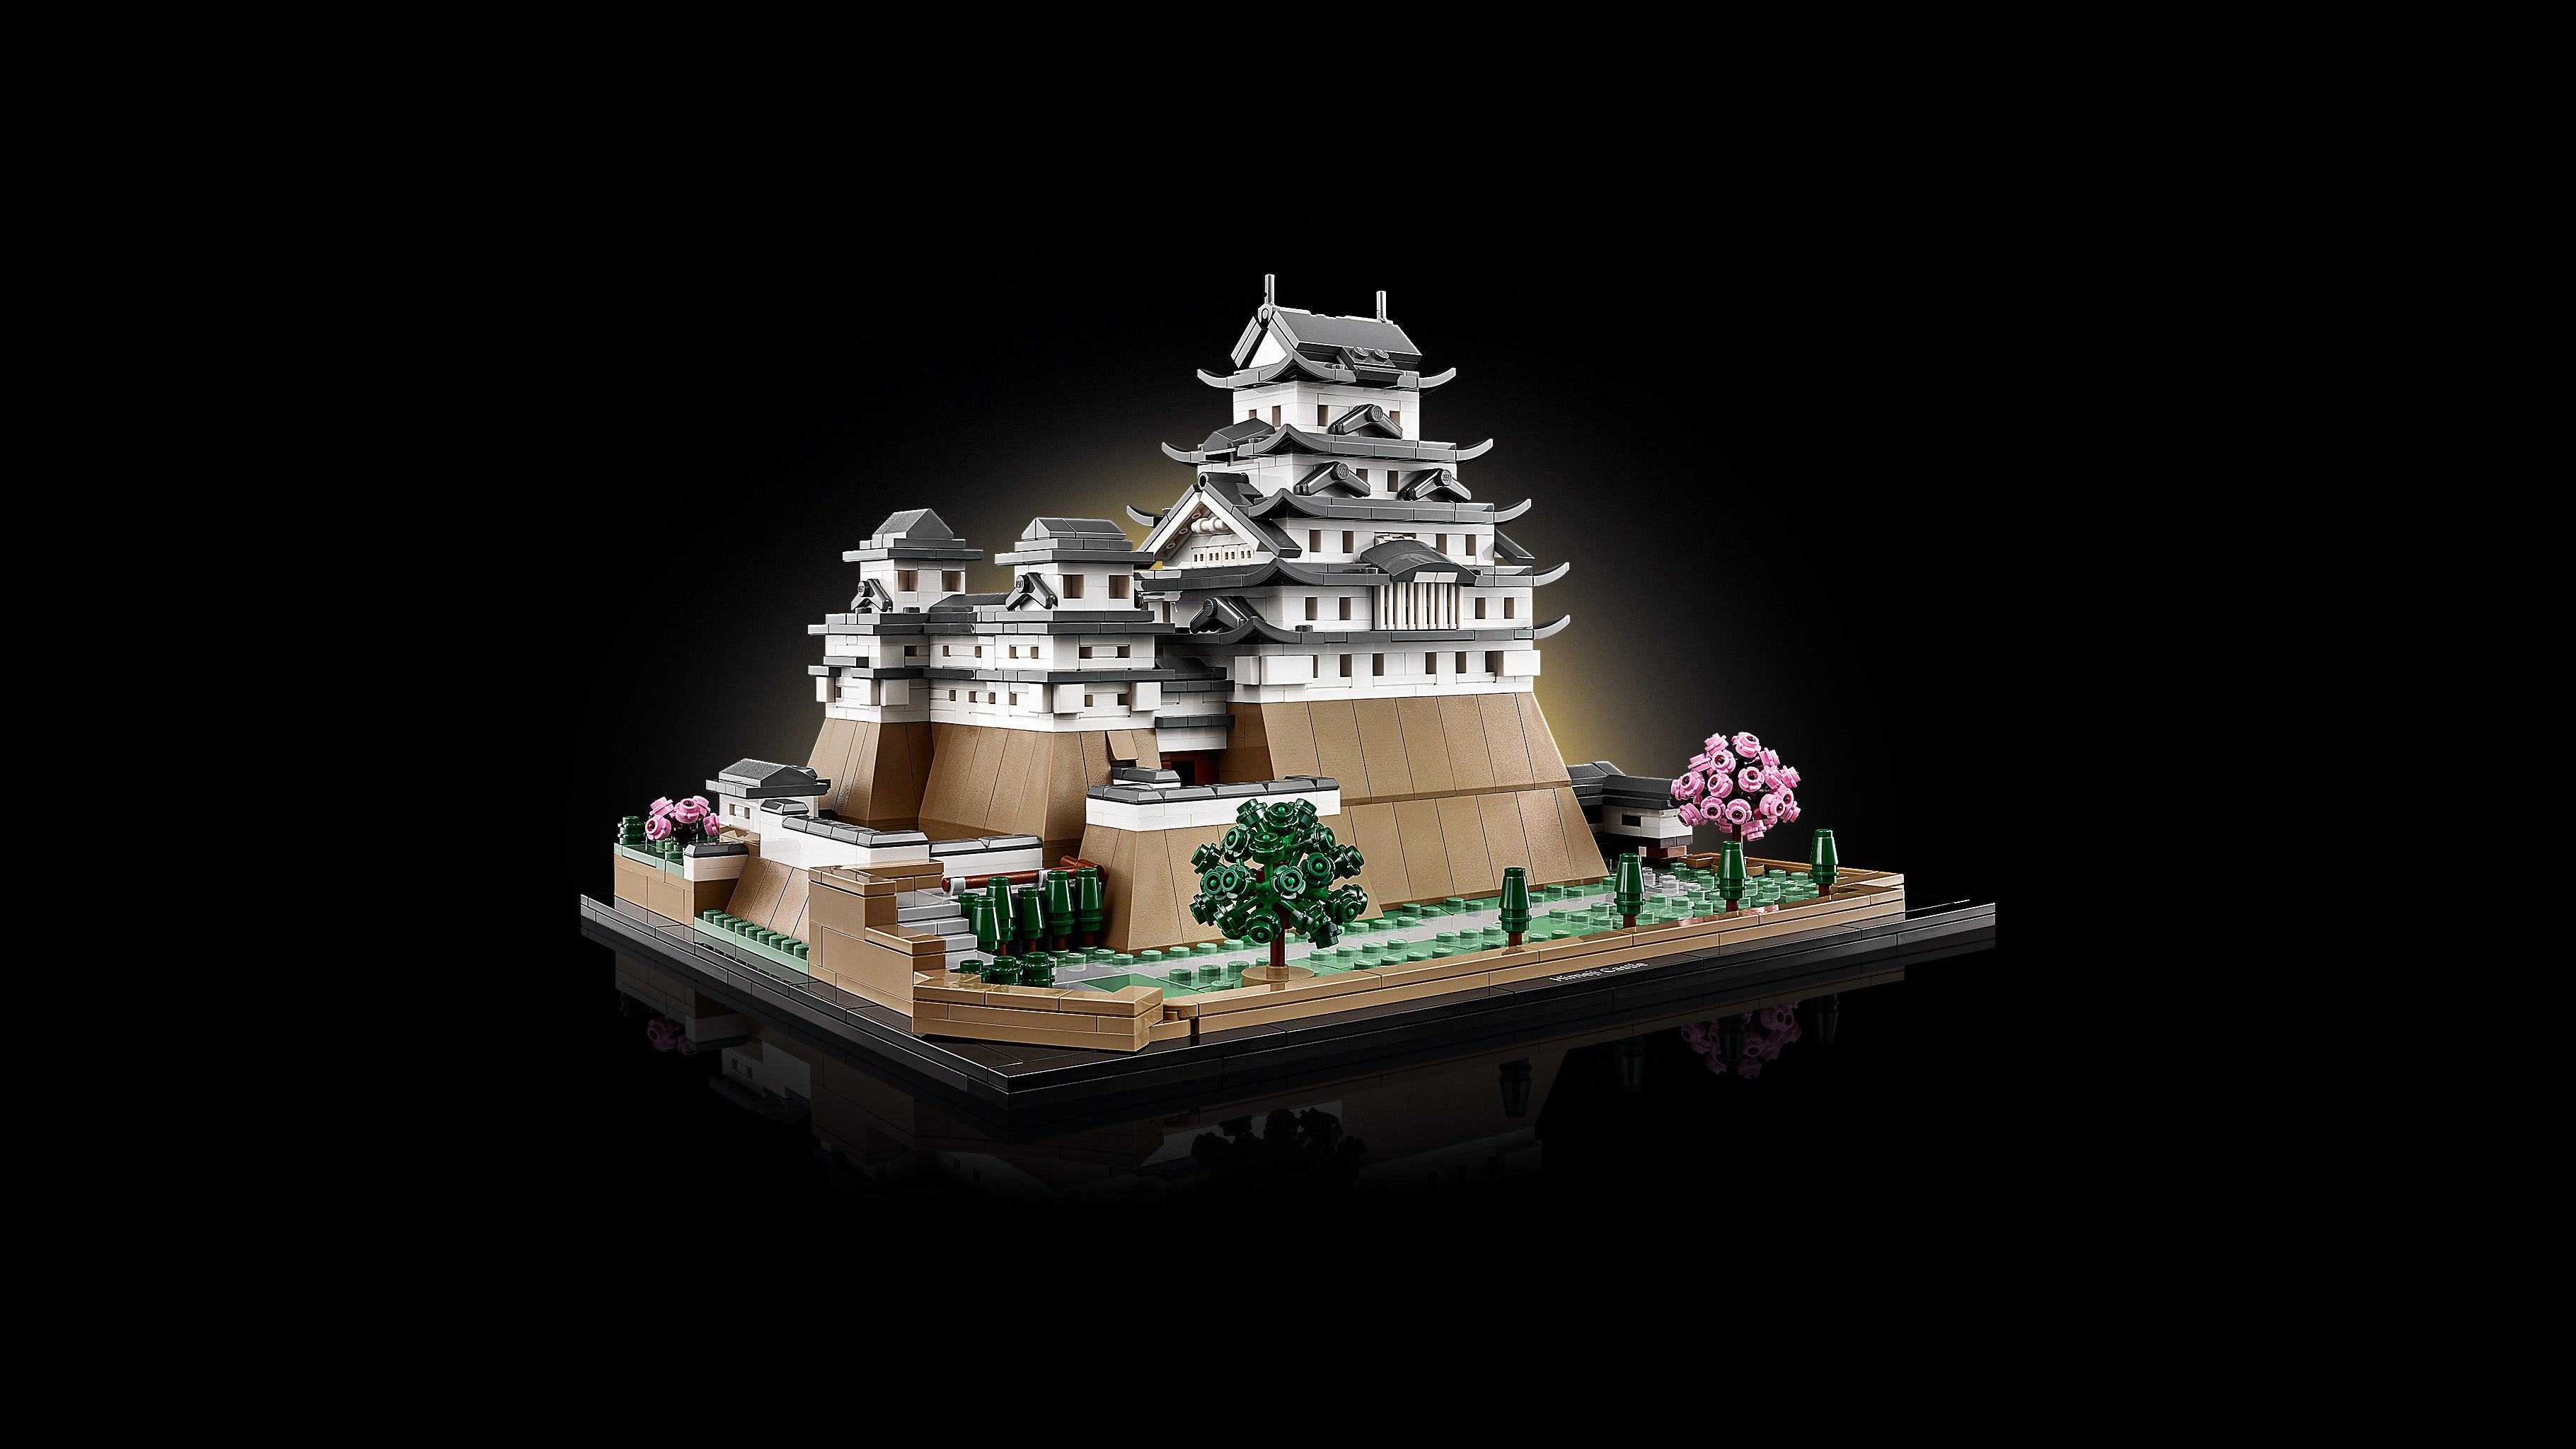 Lego 21060 Himeji Castle